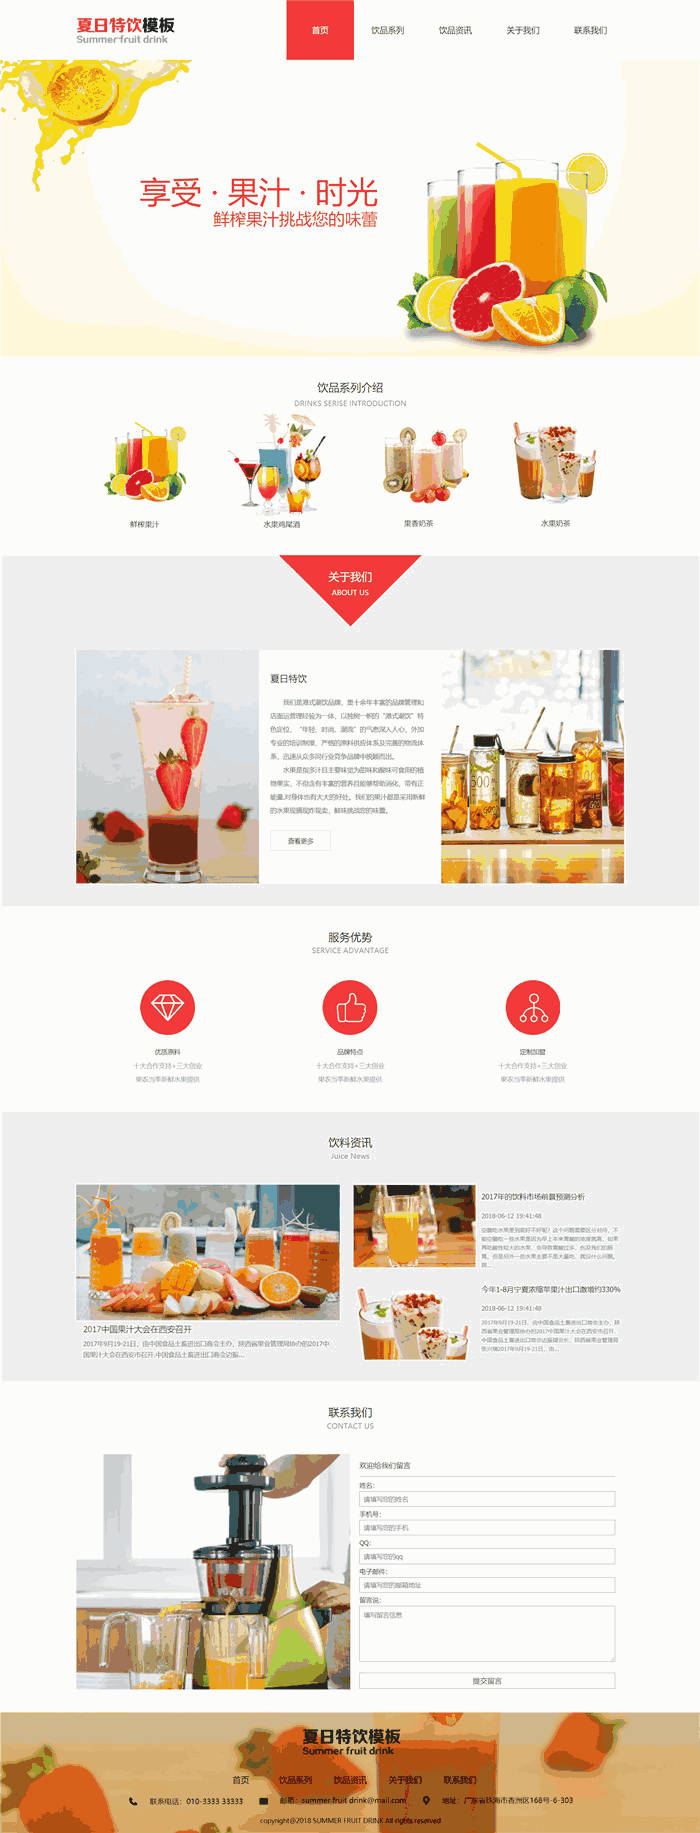 响应式鲜榨果汁鸡尾酒水果奶茶饮品网站WordPress主题模板演示图